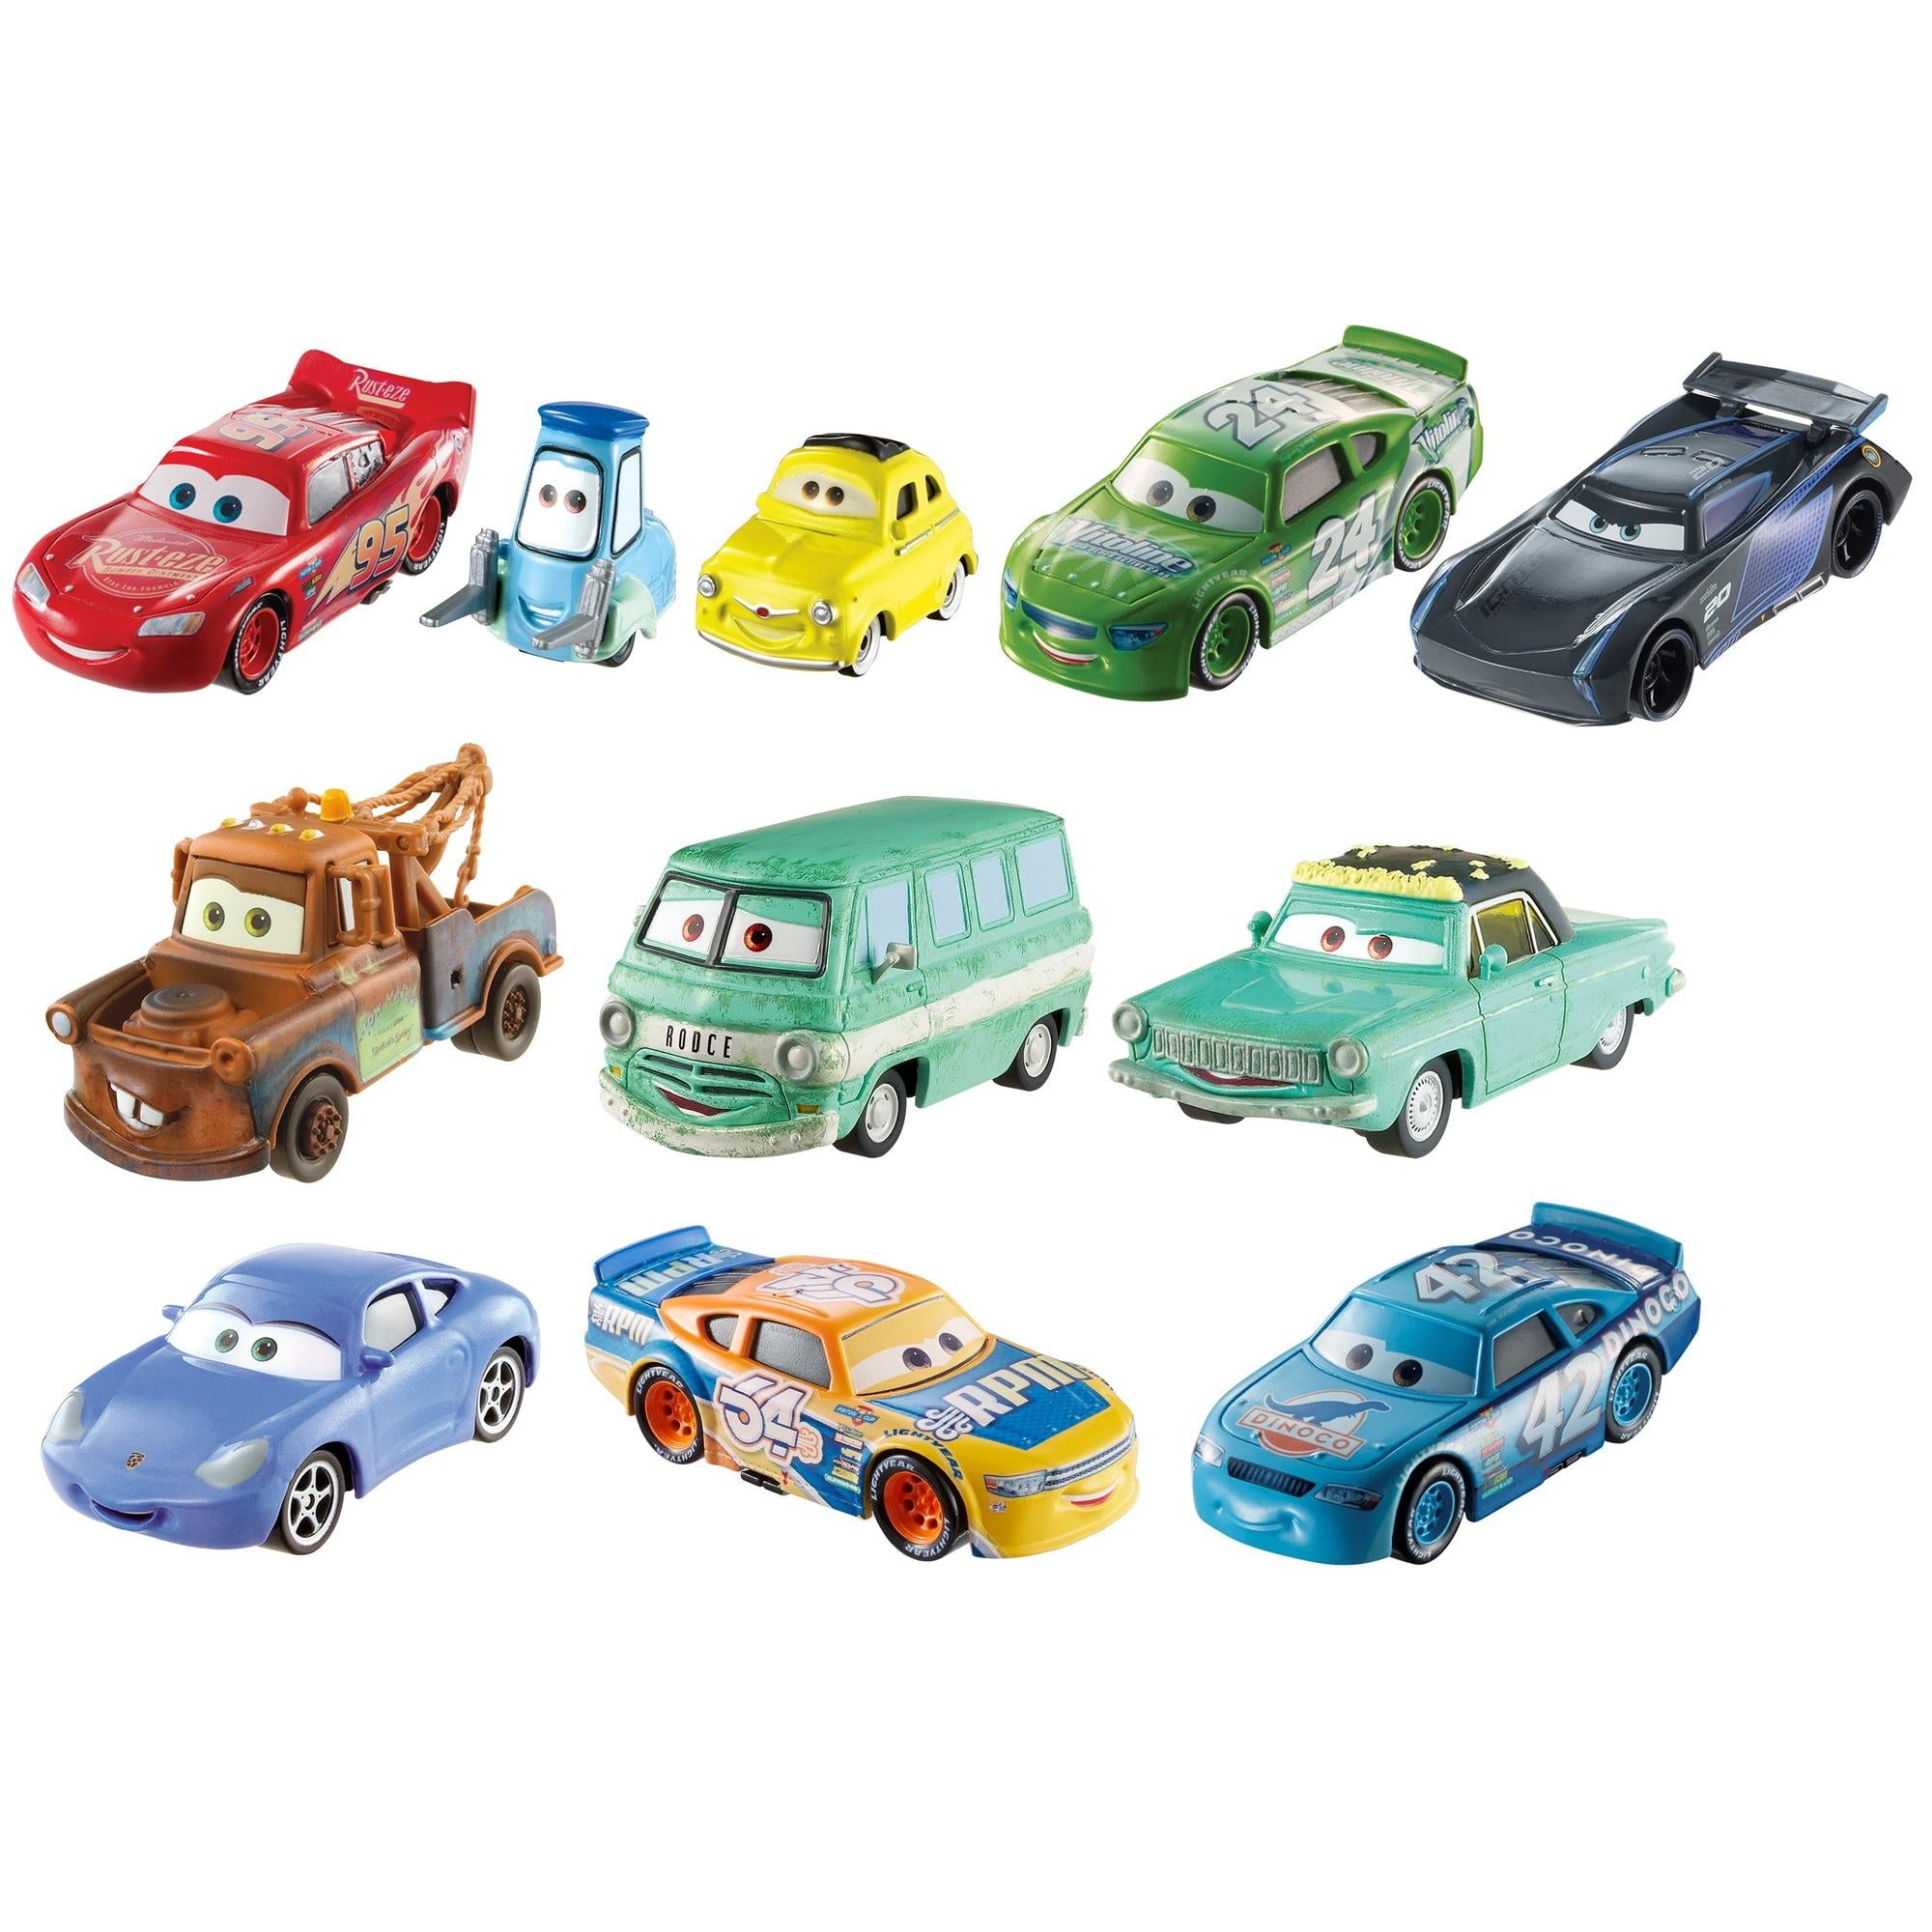 Машинки 10 9 8 7. Игрушки Disney Pixar cars Mattel. Mattel Disney Pixar cars 3. Набор машинок Тачки Disney Pixar. Тачки 3 игрушки Tomica.